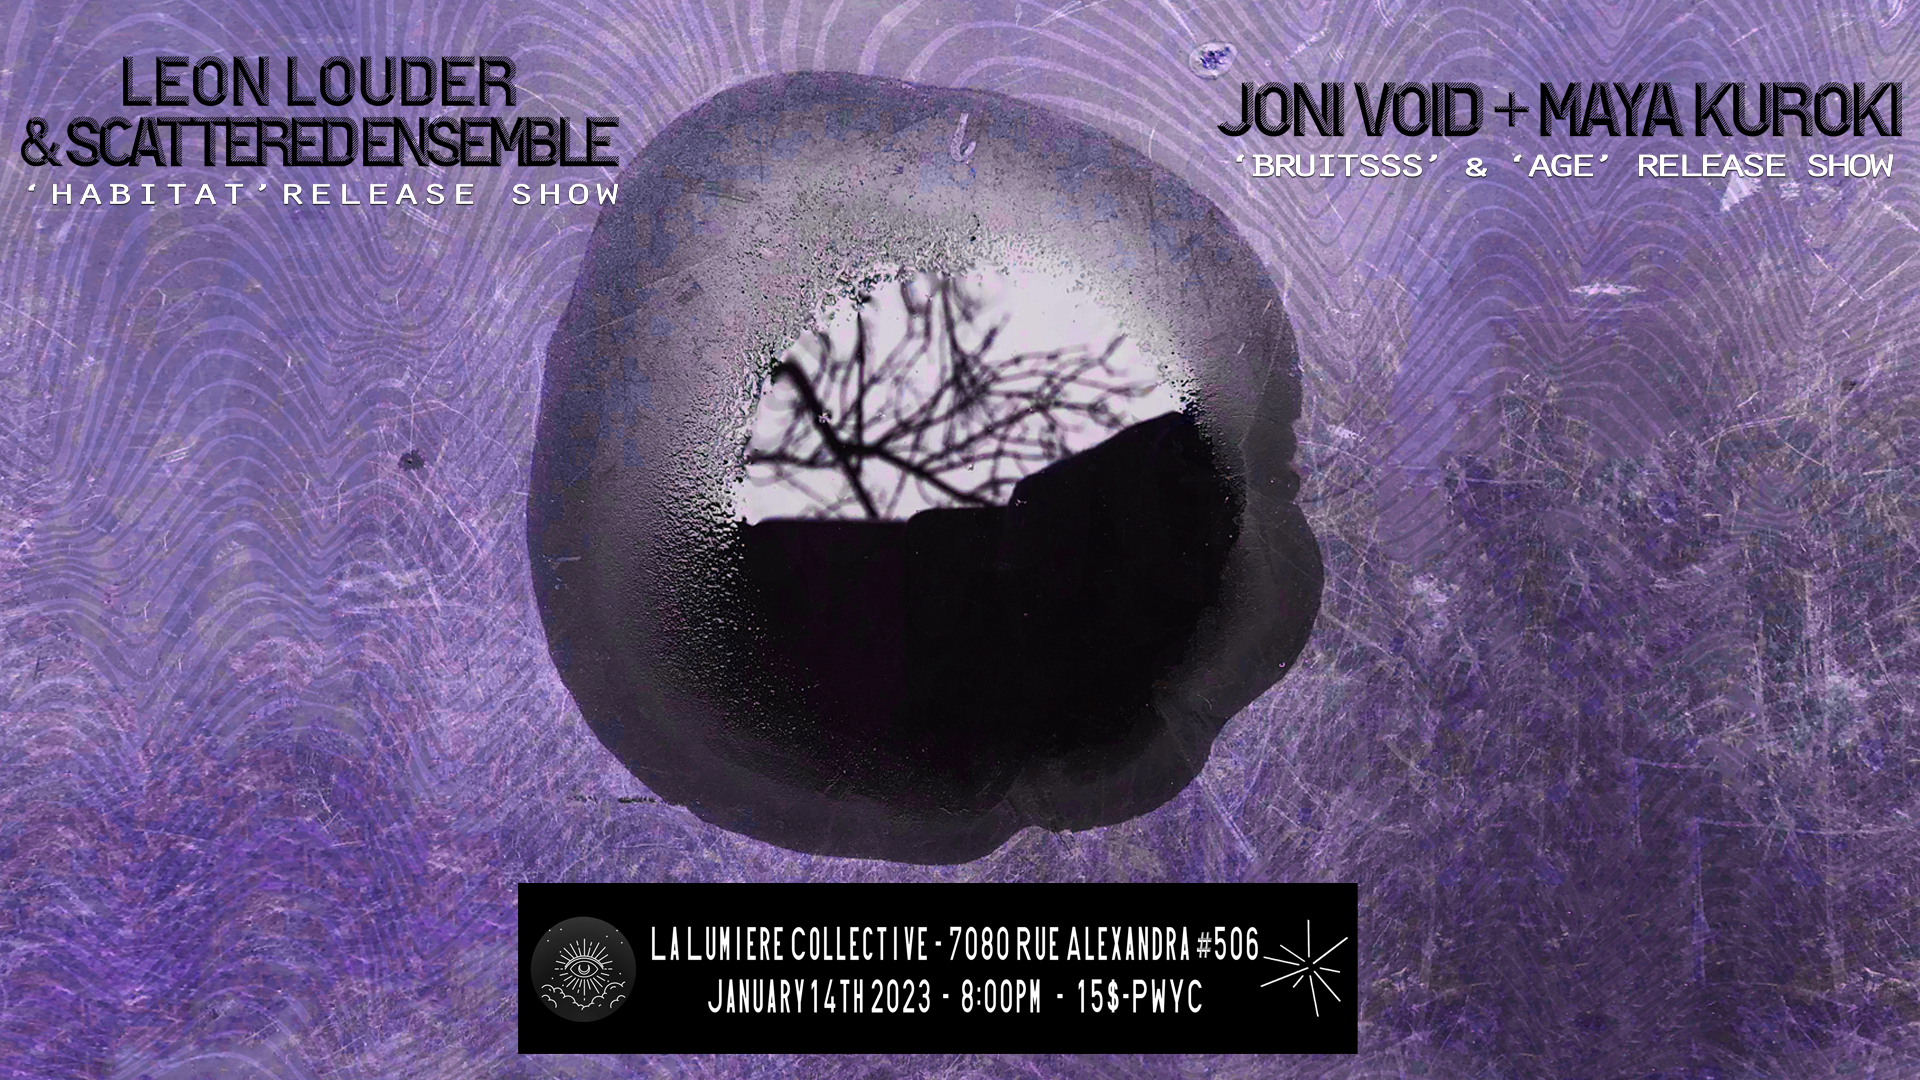 Leon Louder & Scattered Ensemble + Joni Void + Maya Kuroki